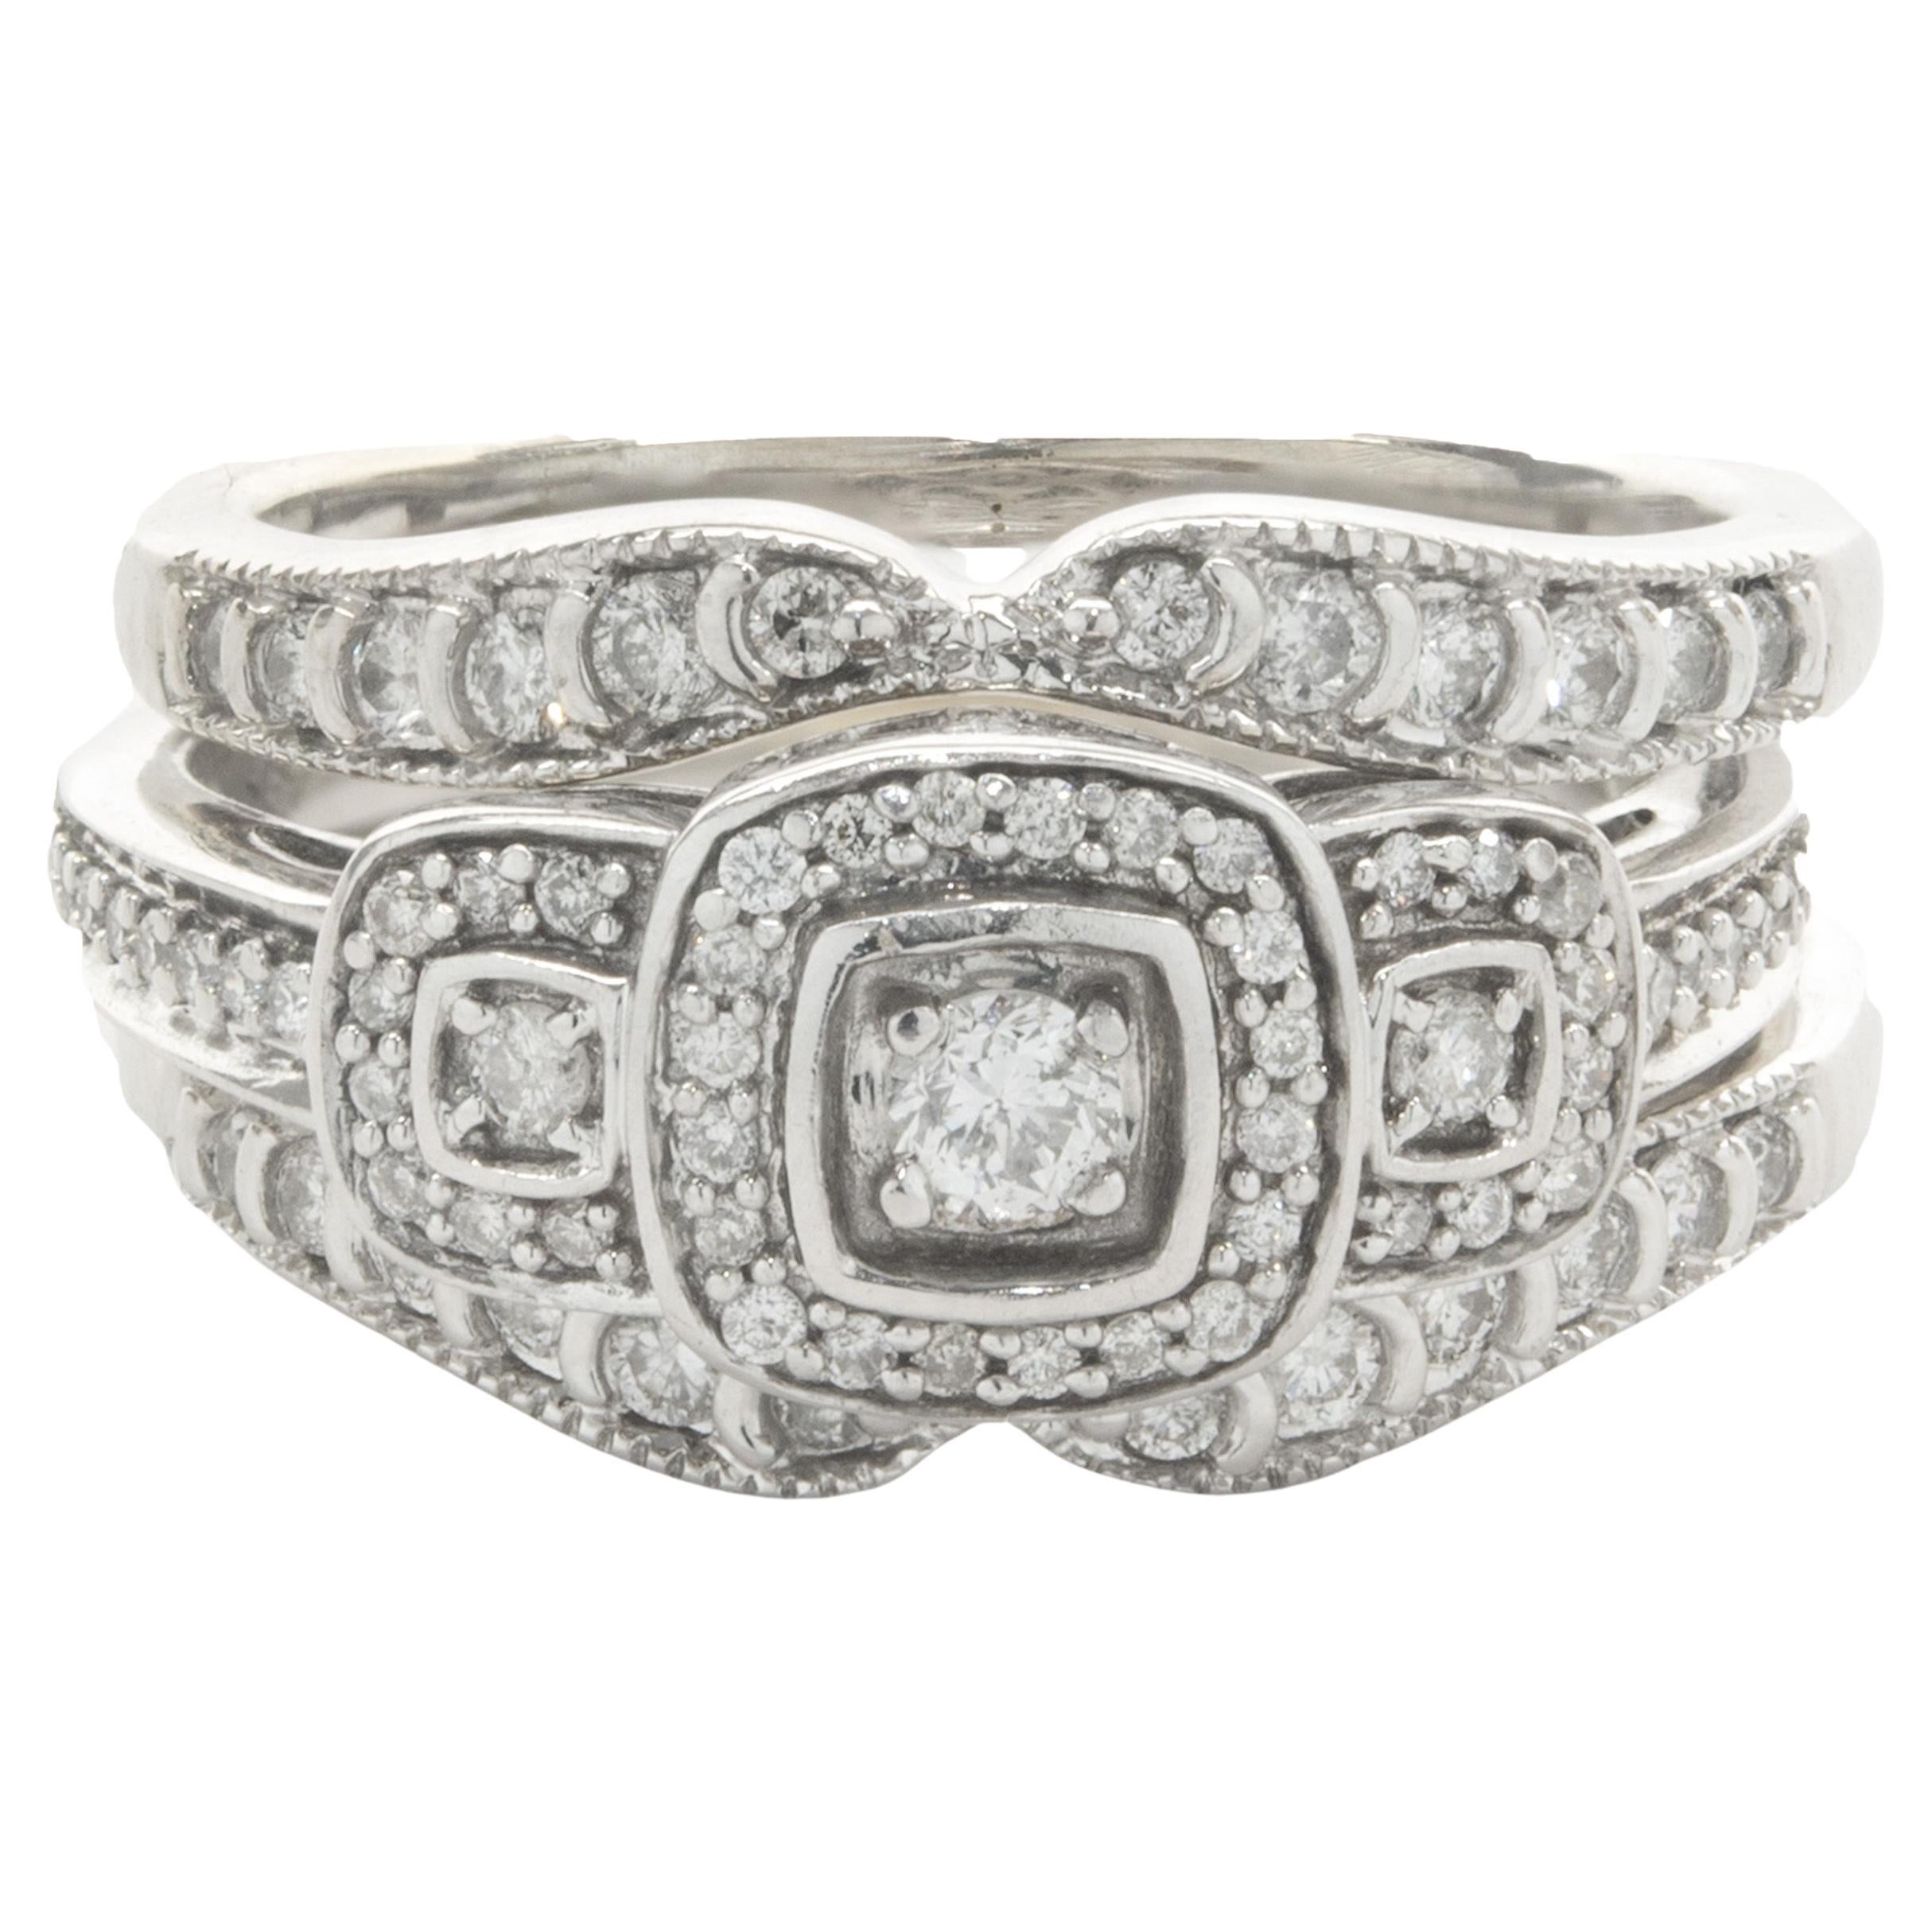 10 Karat White Gold Diamond Engagement Ring with Ring Gaurd